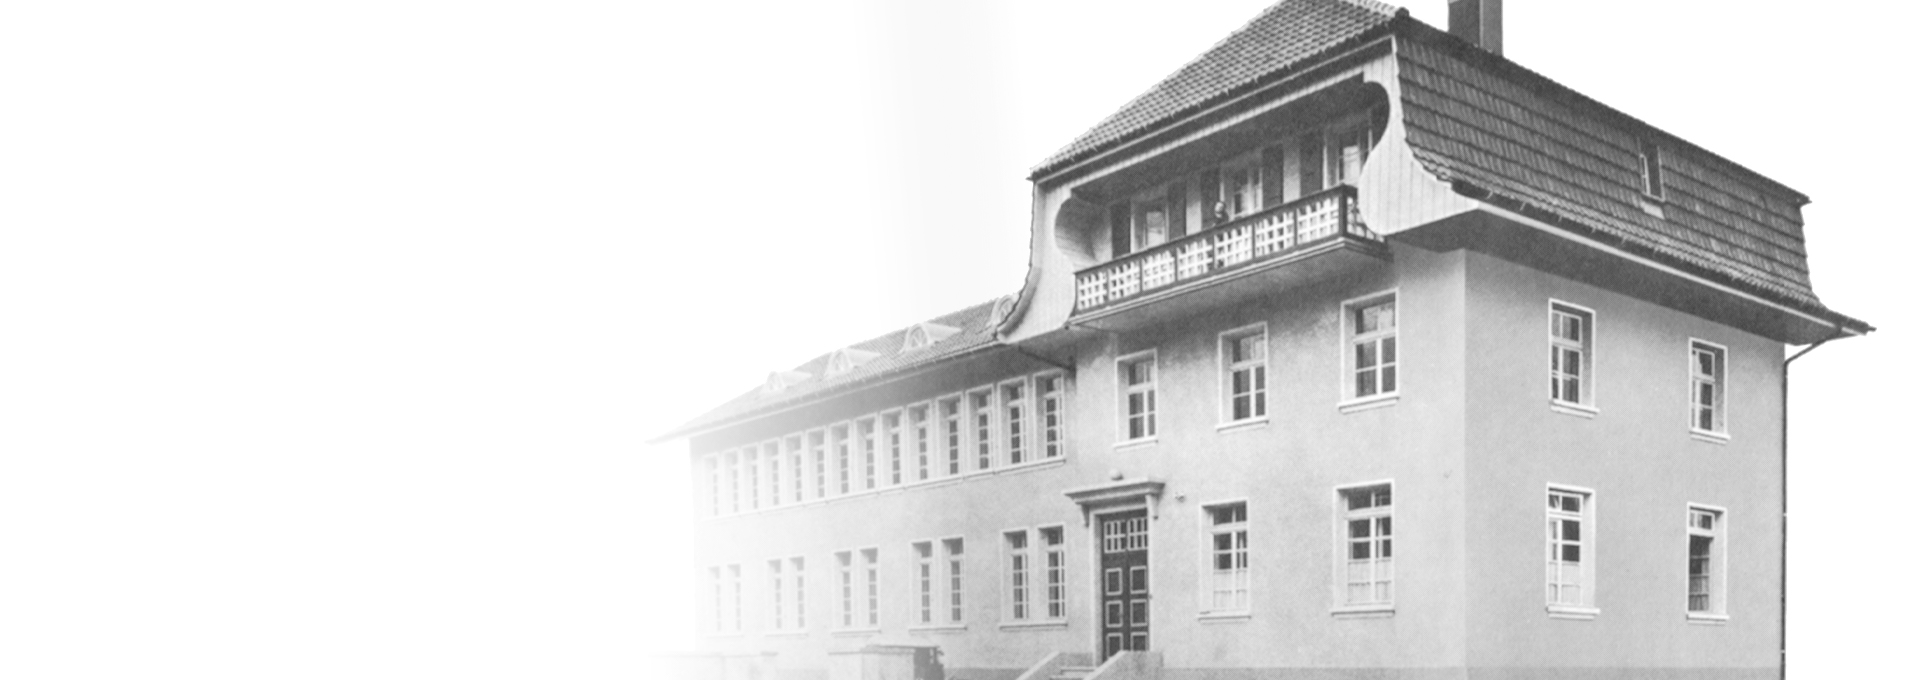 Oude zwart-witfoto van Bernafons eerste fabriek in Flamatt, bij Bern, Zwitserland, 1925